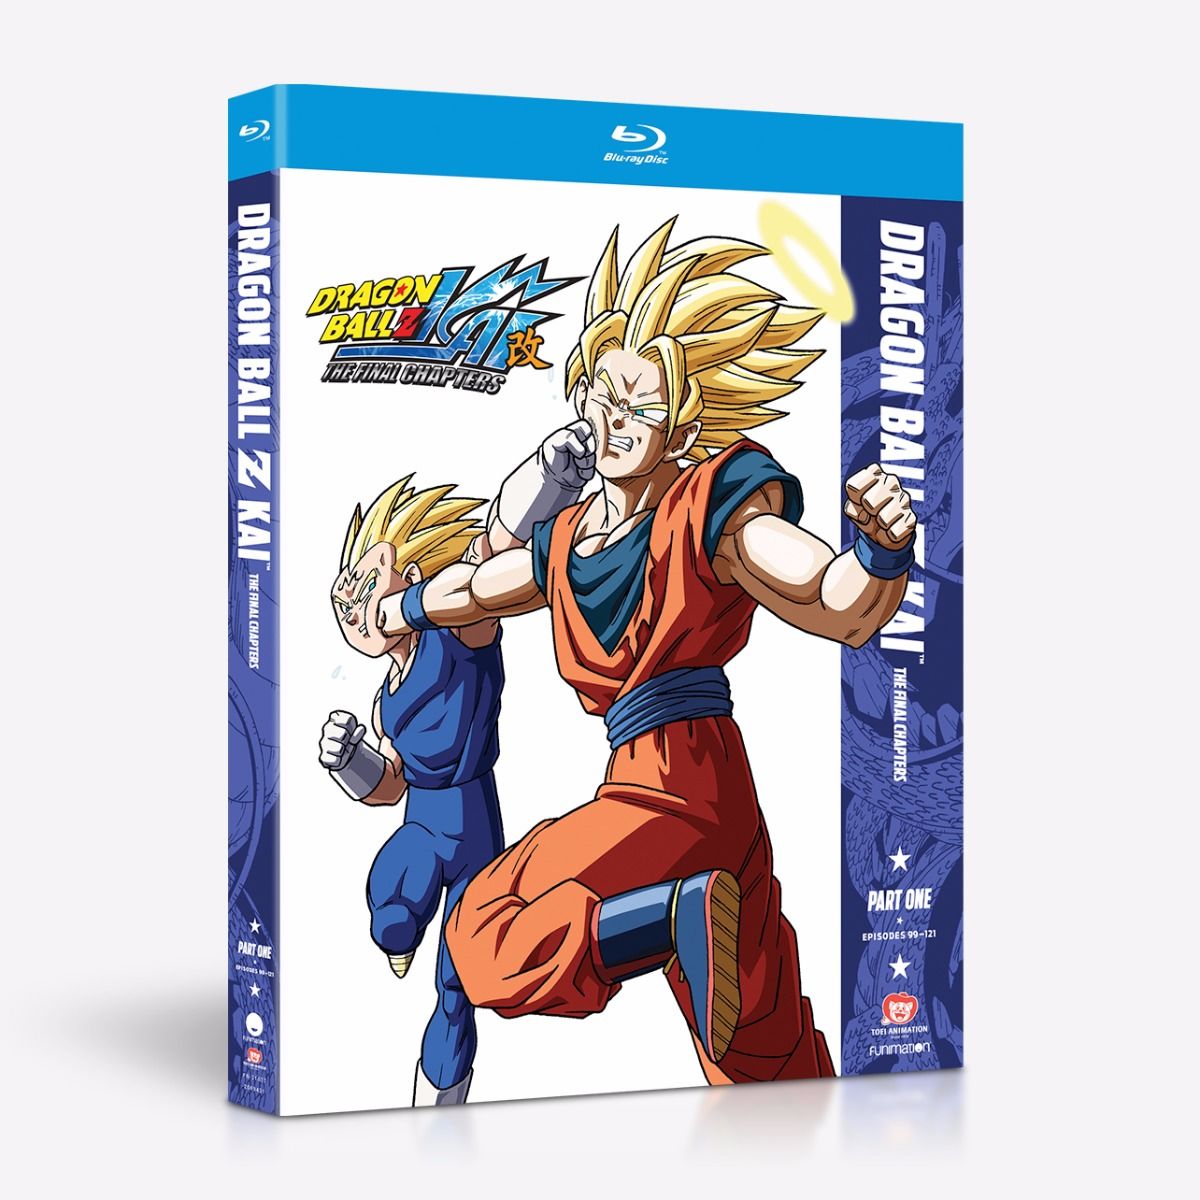 Dragon Ball Z Kai: Part One, Ep. 1-19 (DVD, 2-Disc Set) Anime Collection 1  NEW